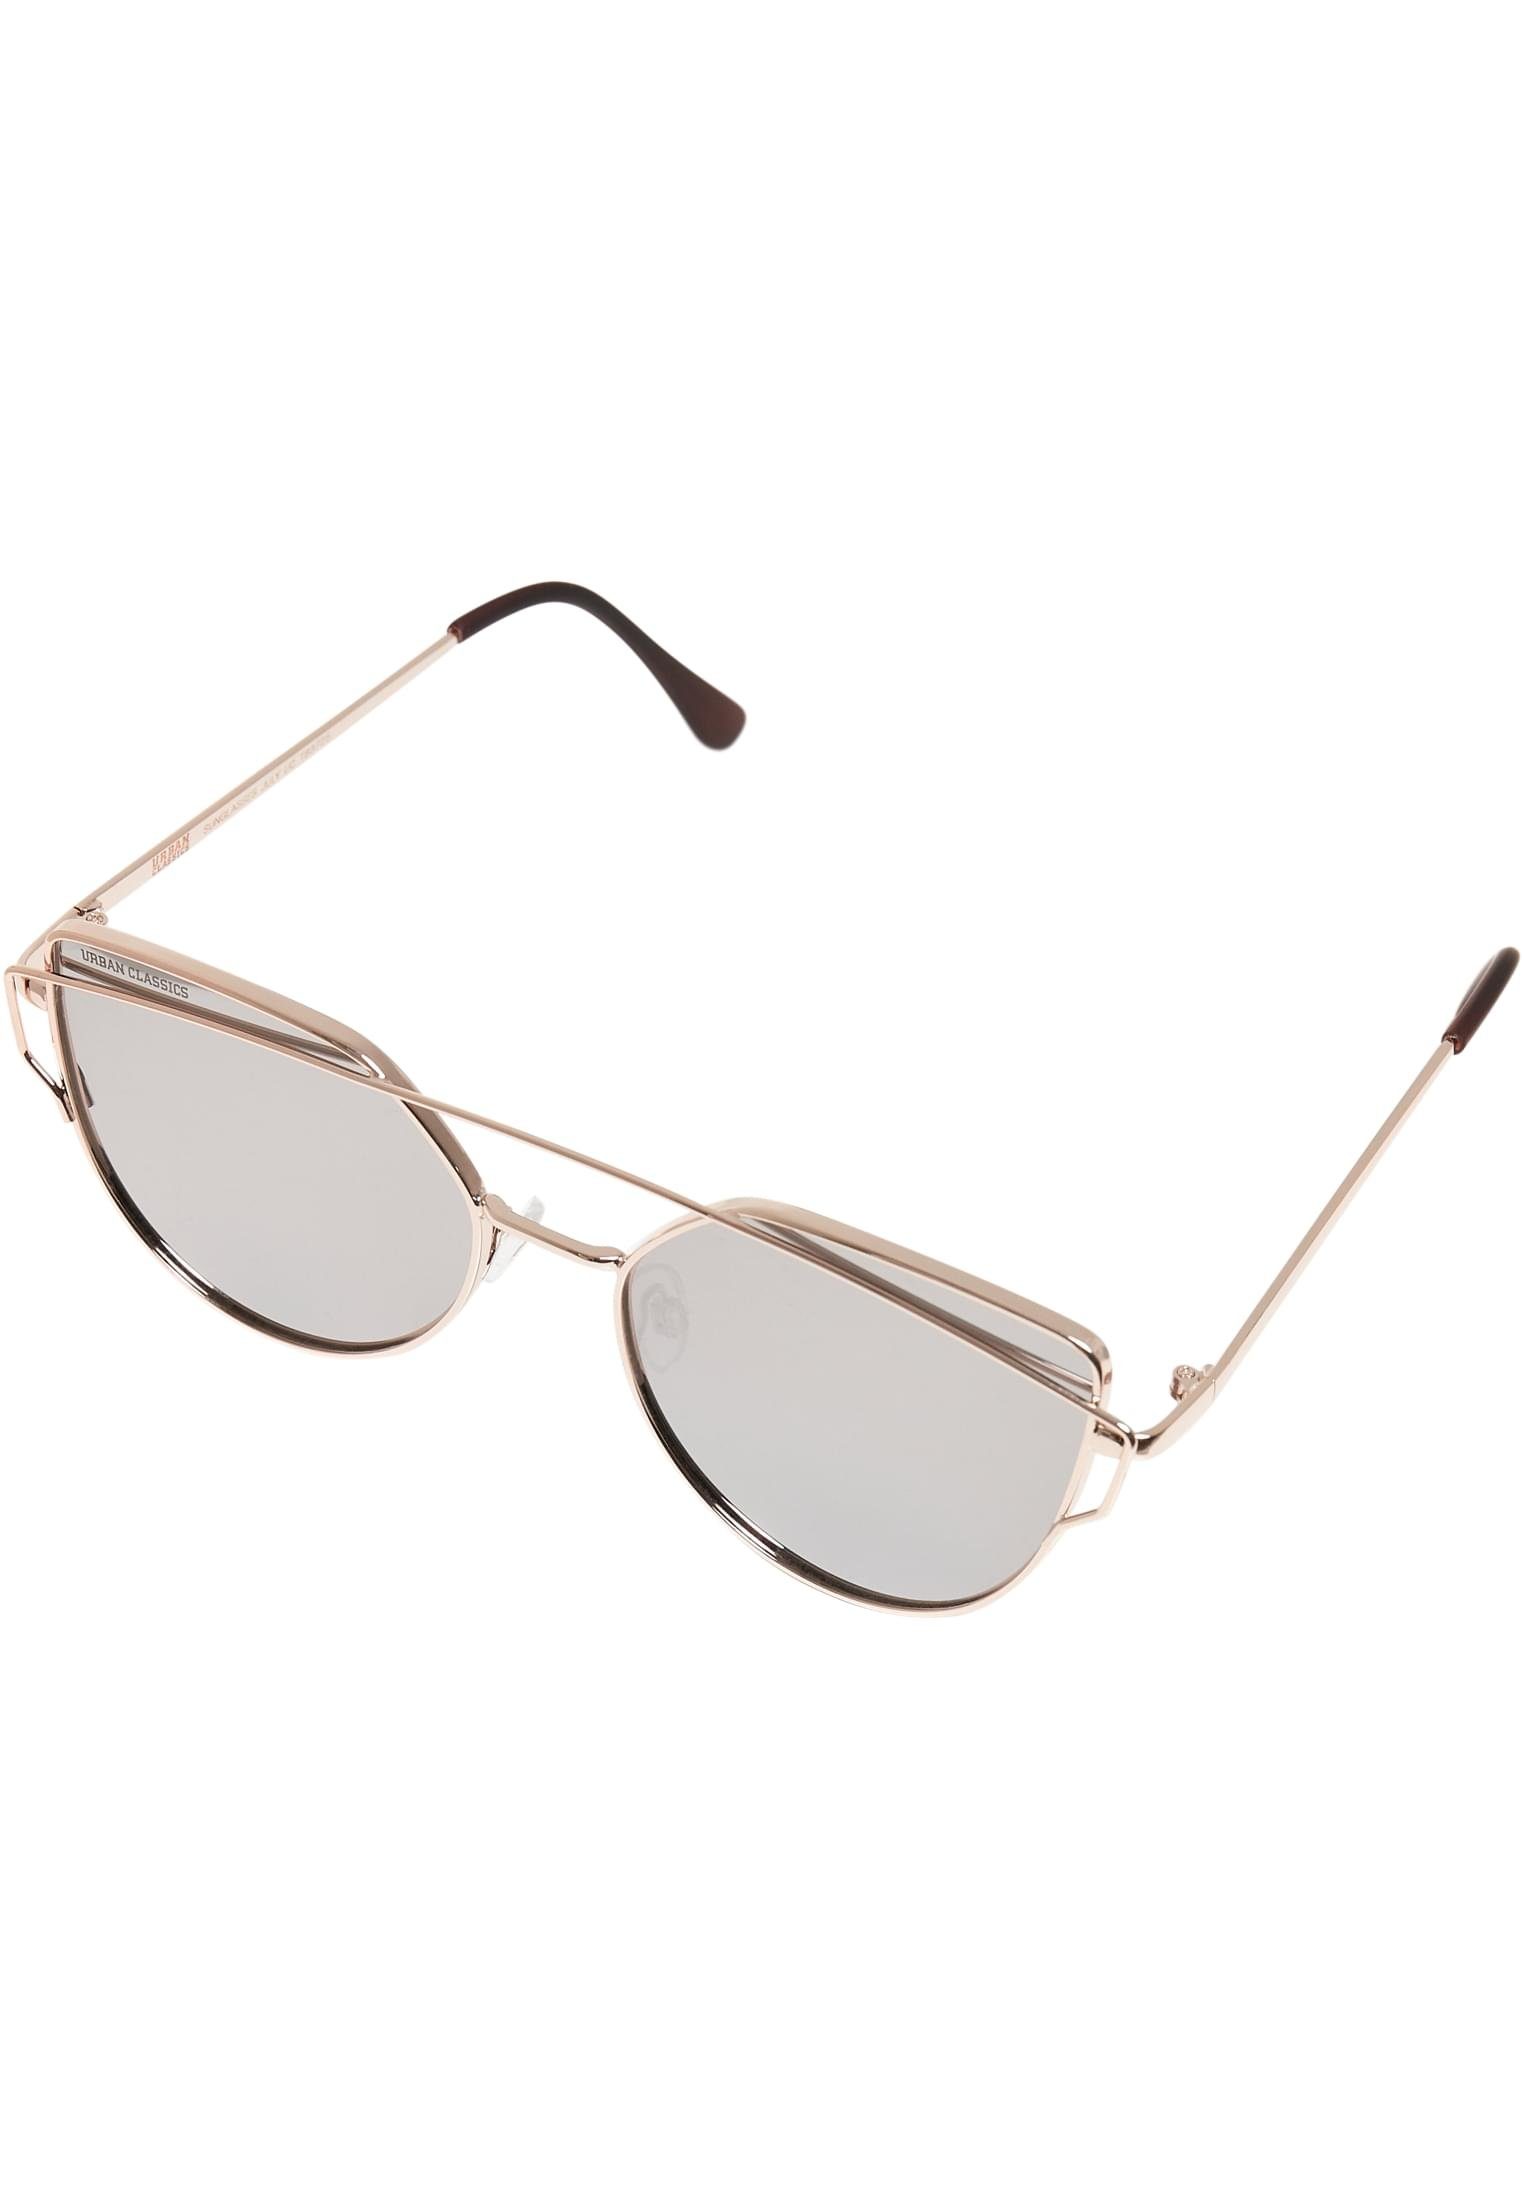 Sonnenbrille gold URBAN Accessoires July CLASSICS Sunglasses UC